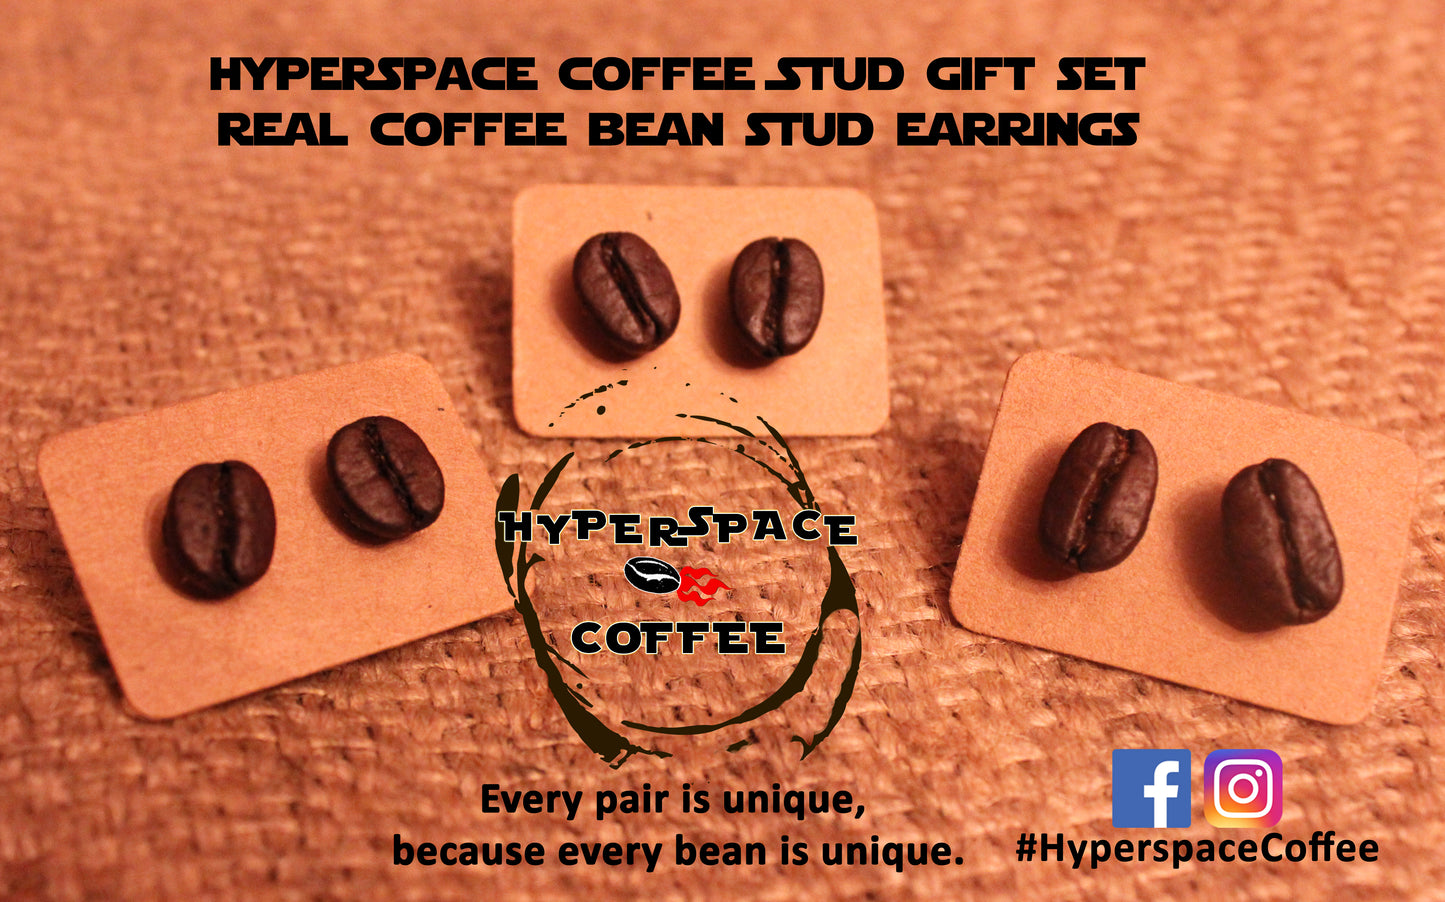 Hyperspace Coffee Stud Earring Set - BUNDLE & SAVE - Triple Shot Coffee Stud Set - Real Coffee Bean Stud Earrings Gift Set